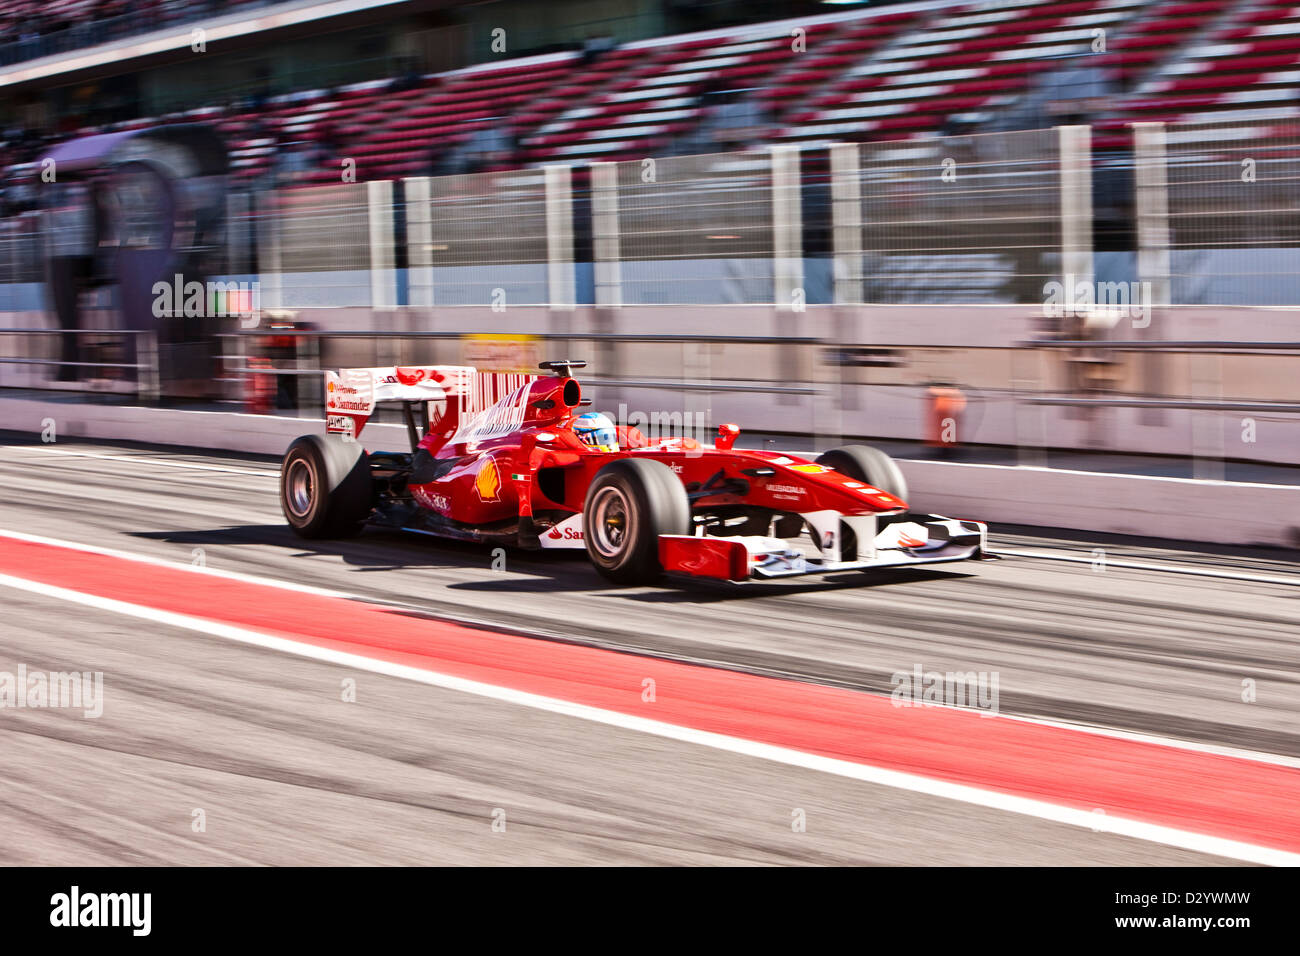 Voiture Formule 1 action, Barcelone, 27 02 10 Banque D'Images